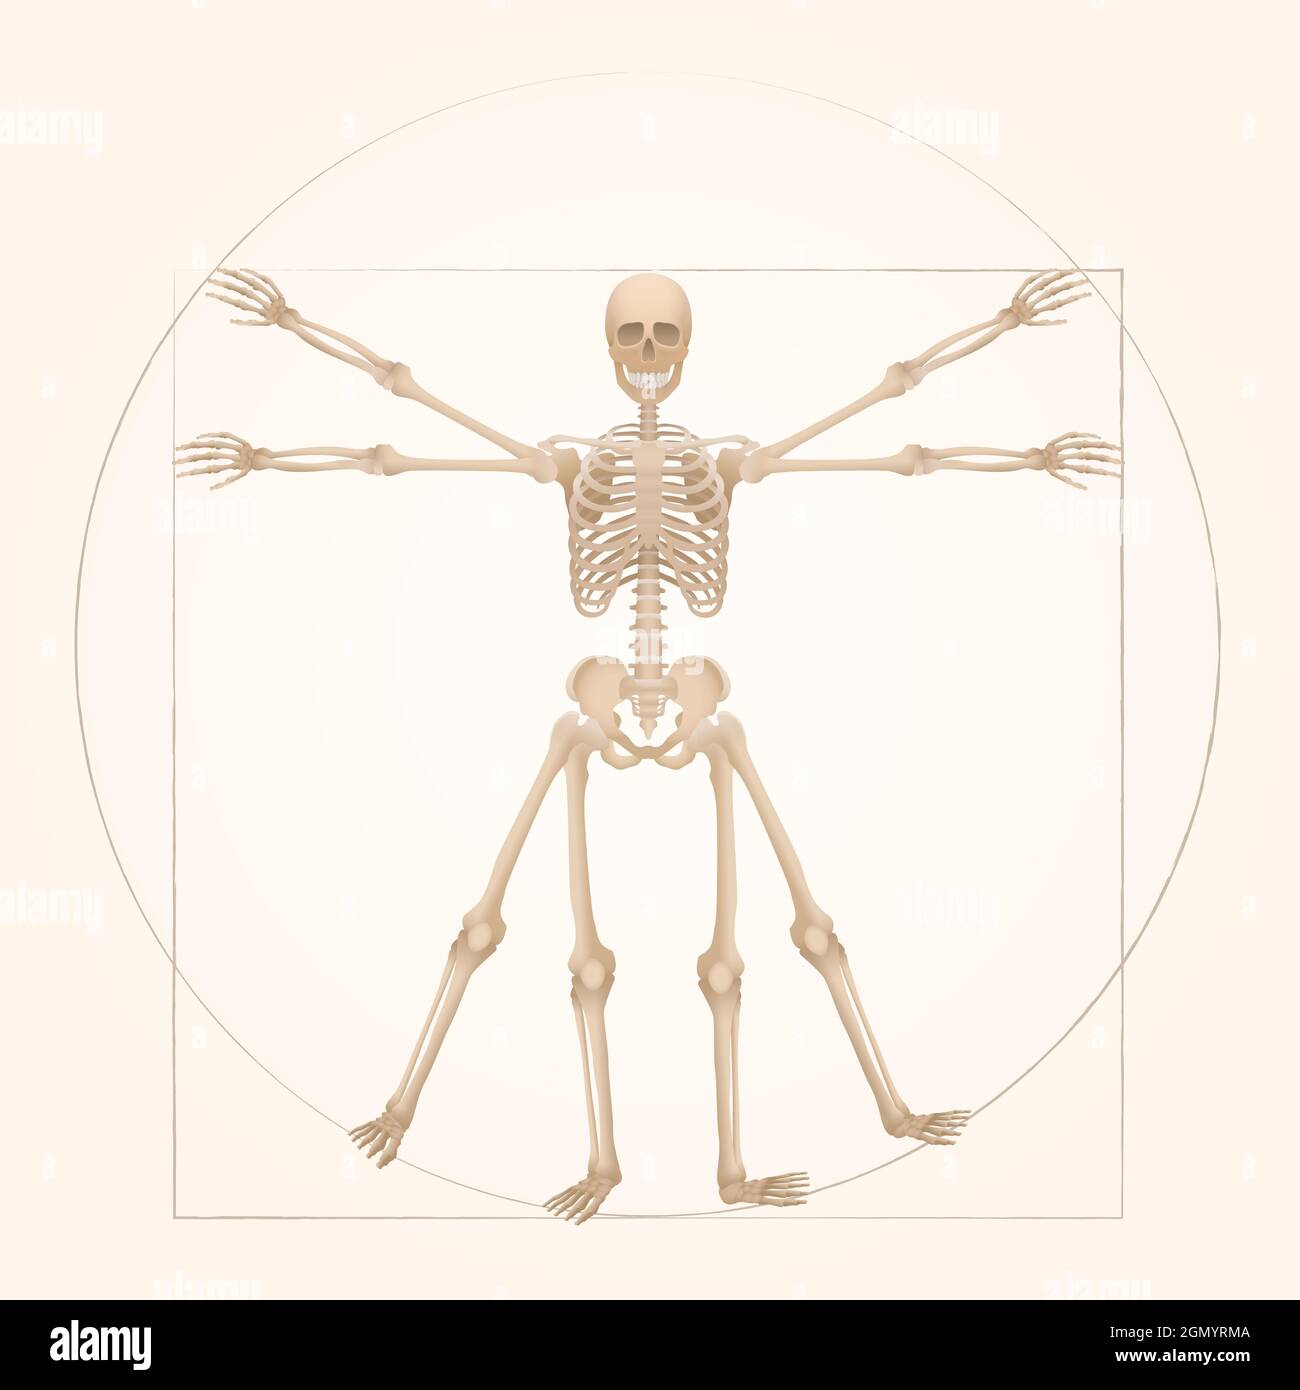 Squelette de Vitruvian - géométrie sacrée dans l'art graphique représentée par une figure de squelette avec des proportions anatomiques d'une personne adulte. Banque D'Images